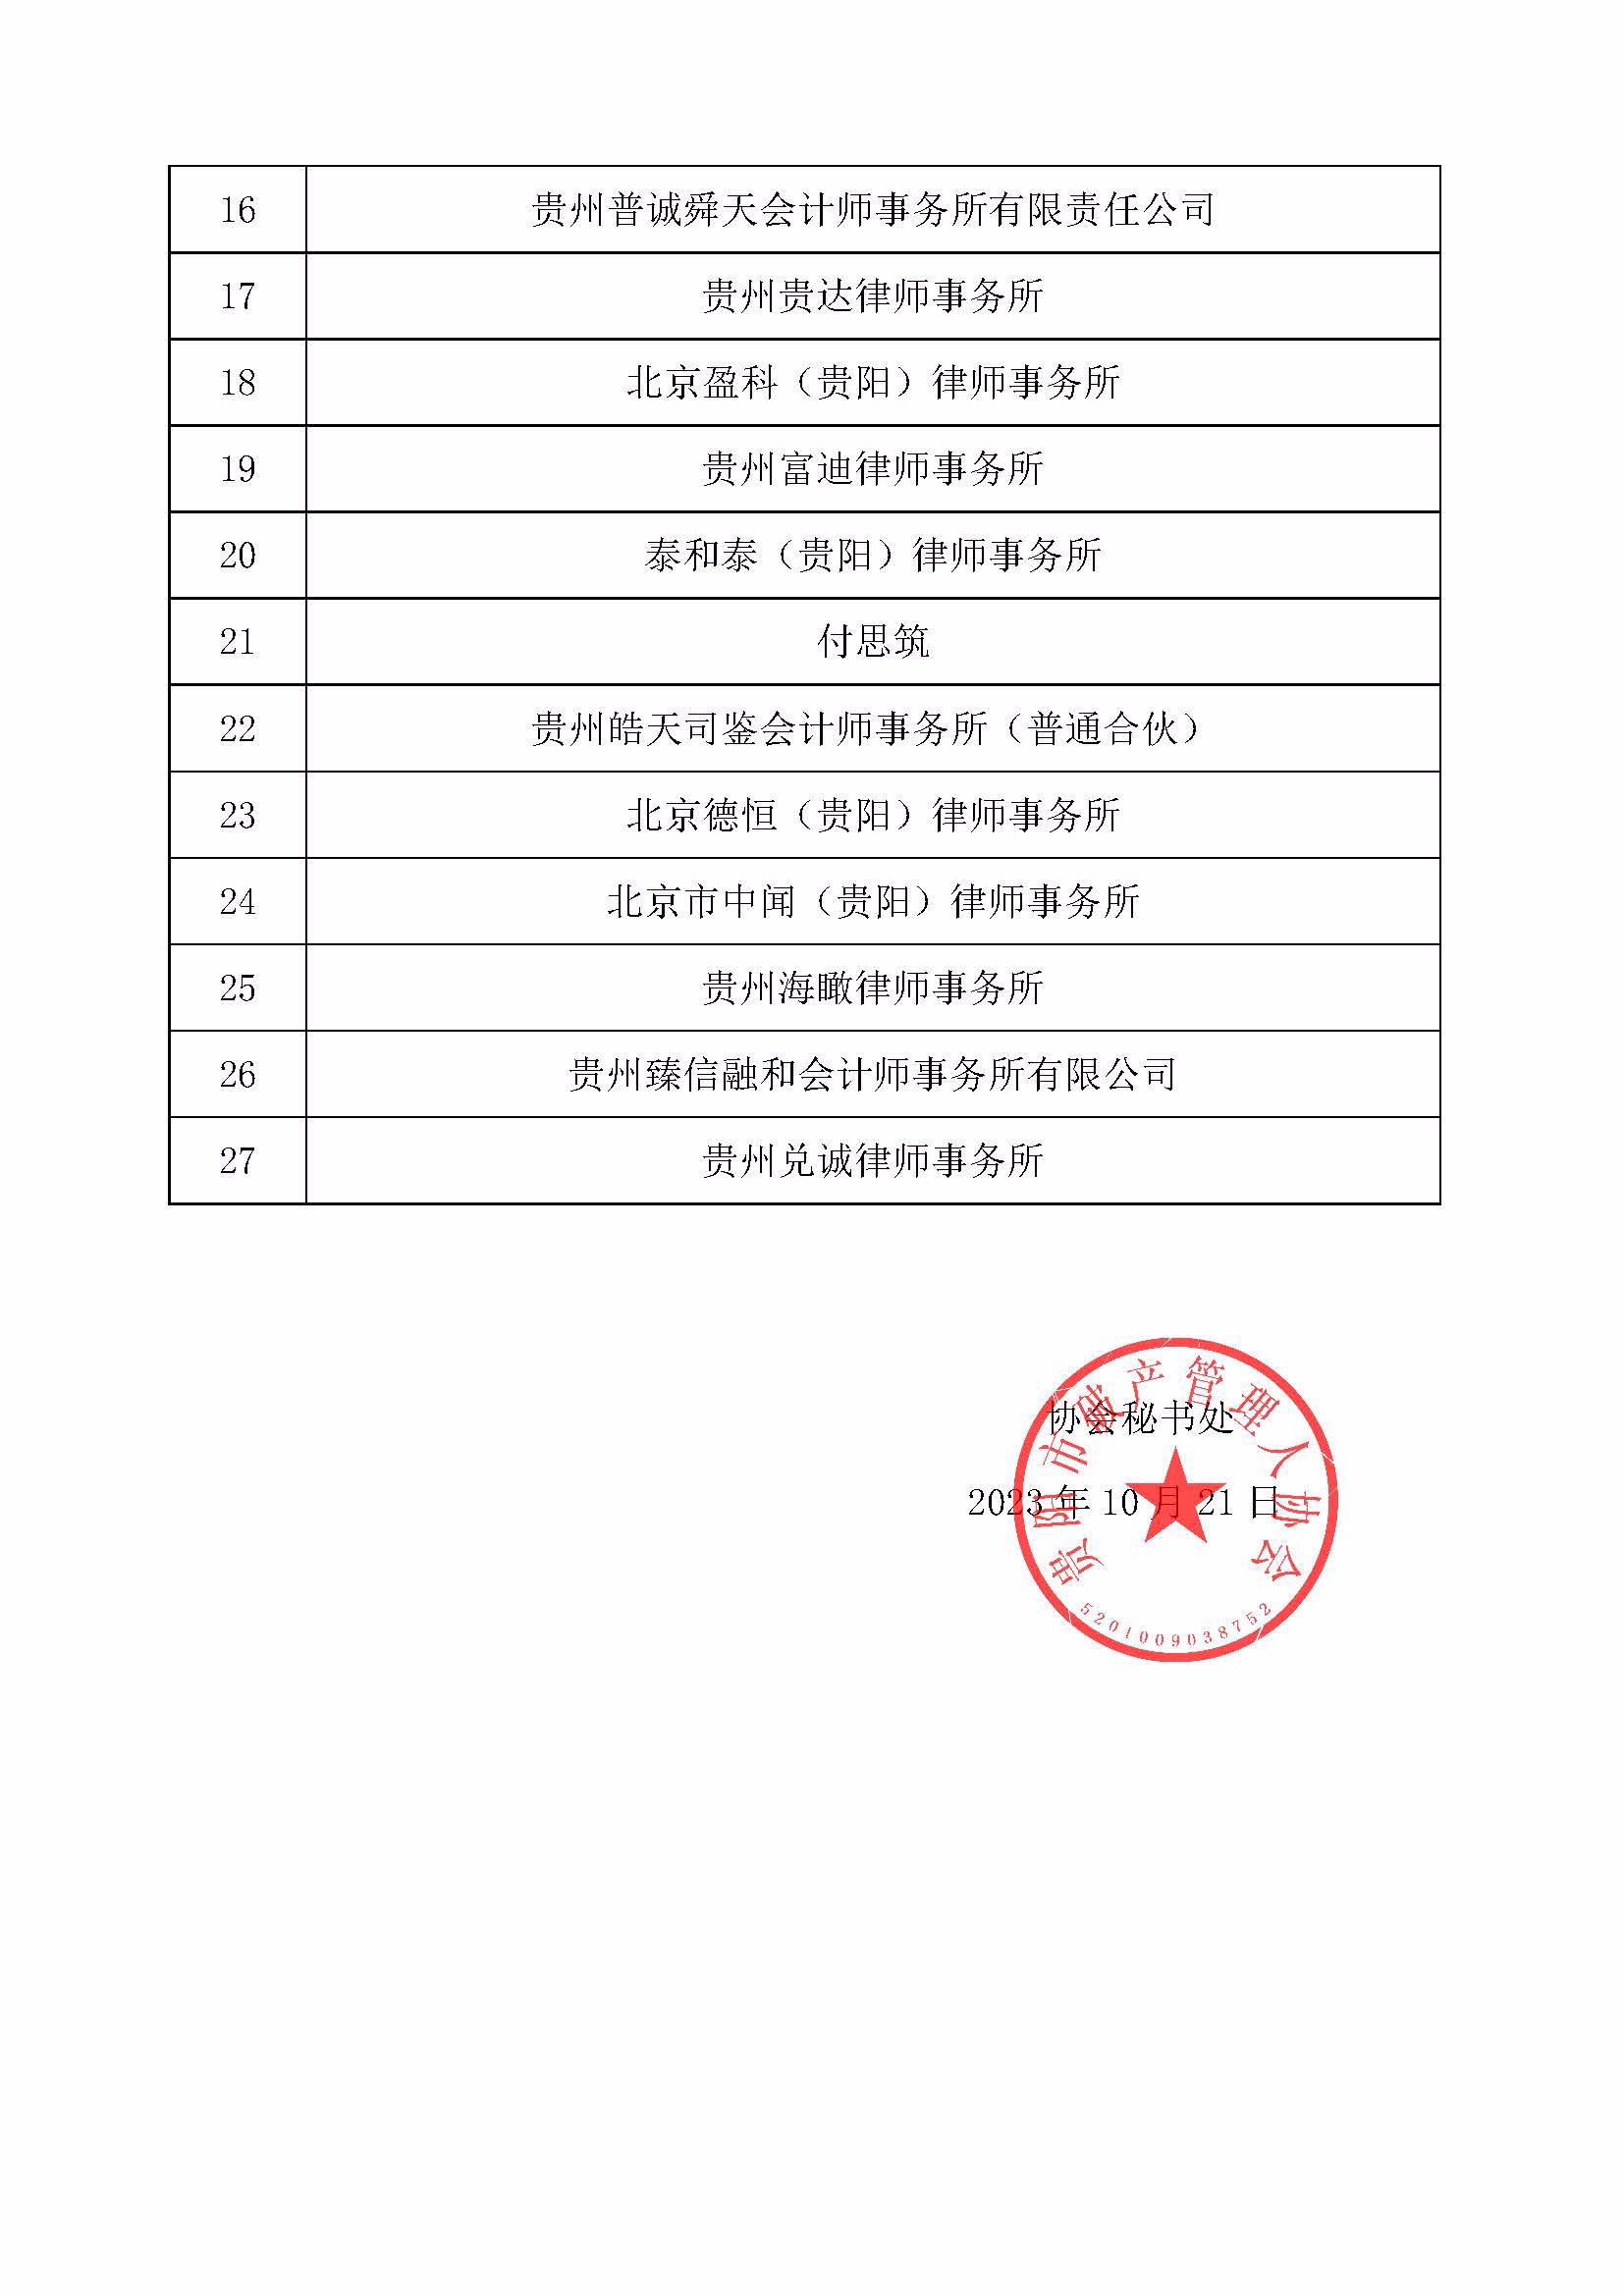 贵阳市破产管理人协会优秀会员名单公告_页面_2.jpg